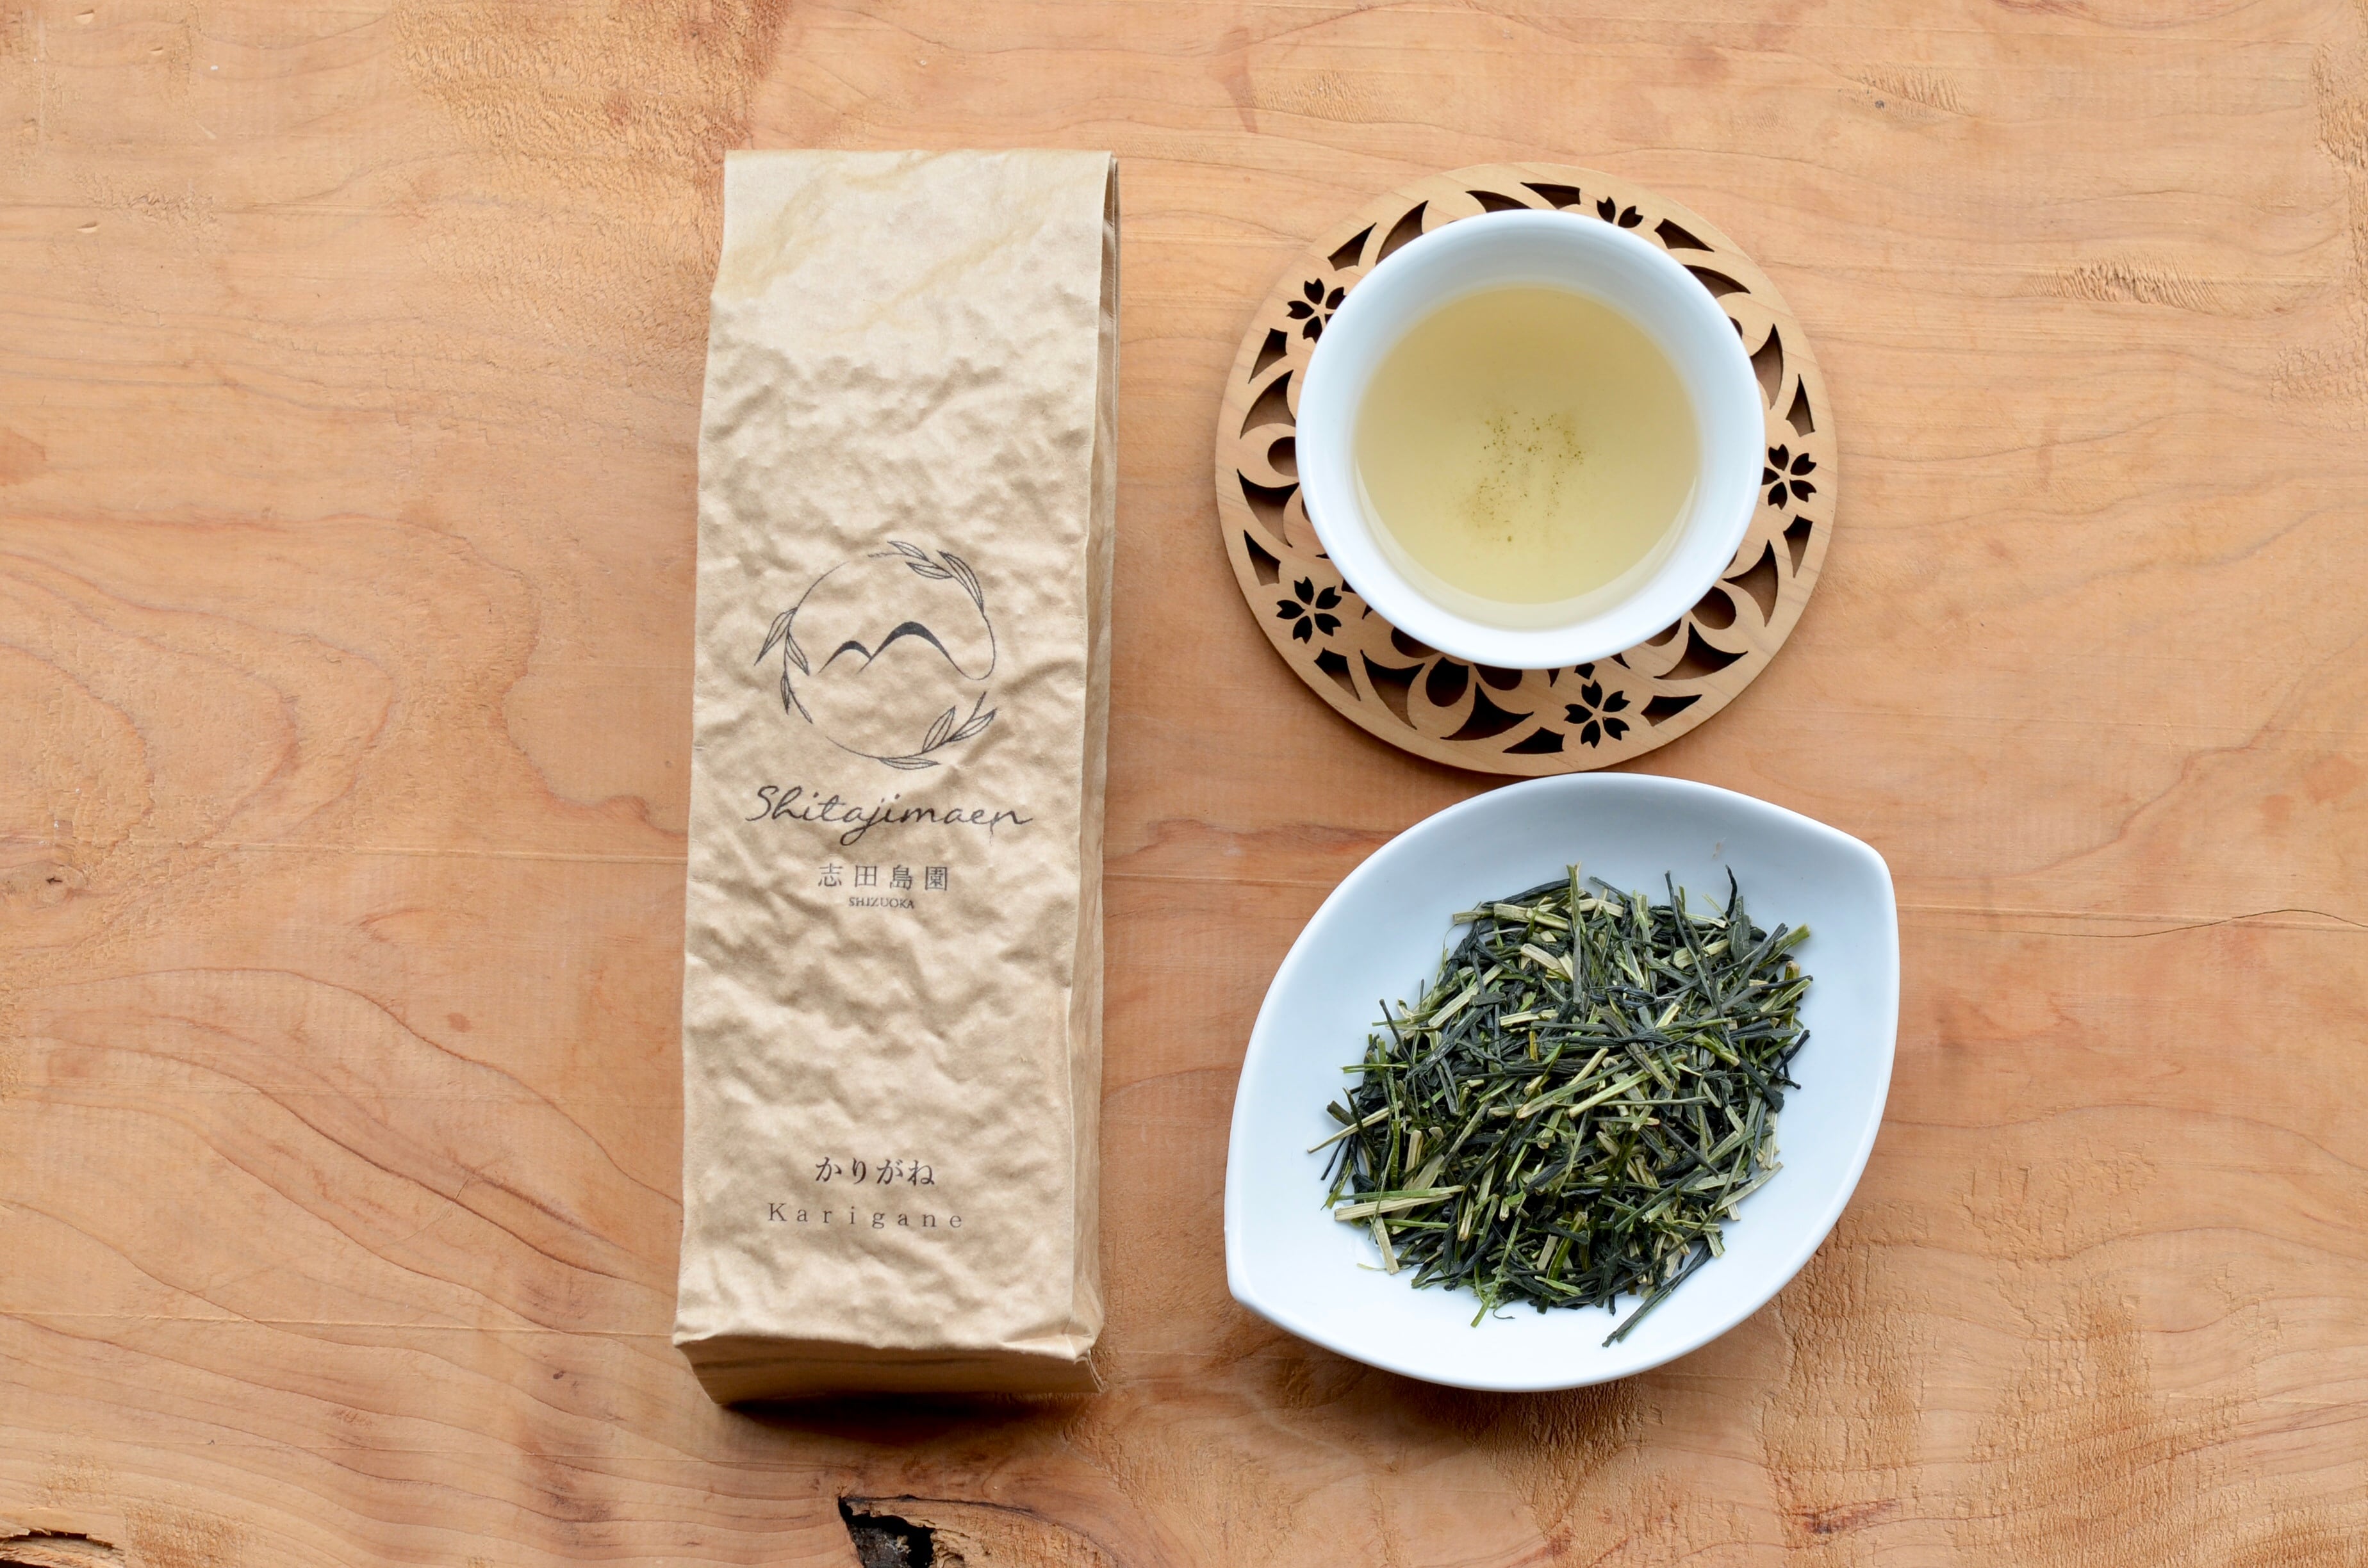 お歳暮 やぶきたくき茶 100g×3袋 茎茶 棒茶 かりがね茶 おいしい静岡県産100%